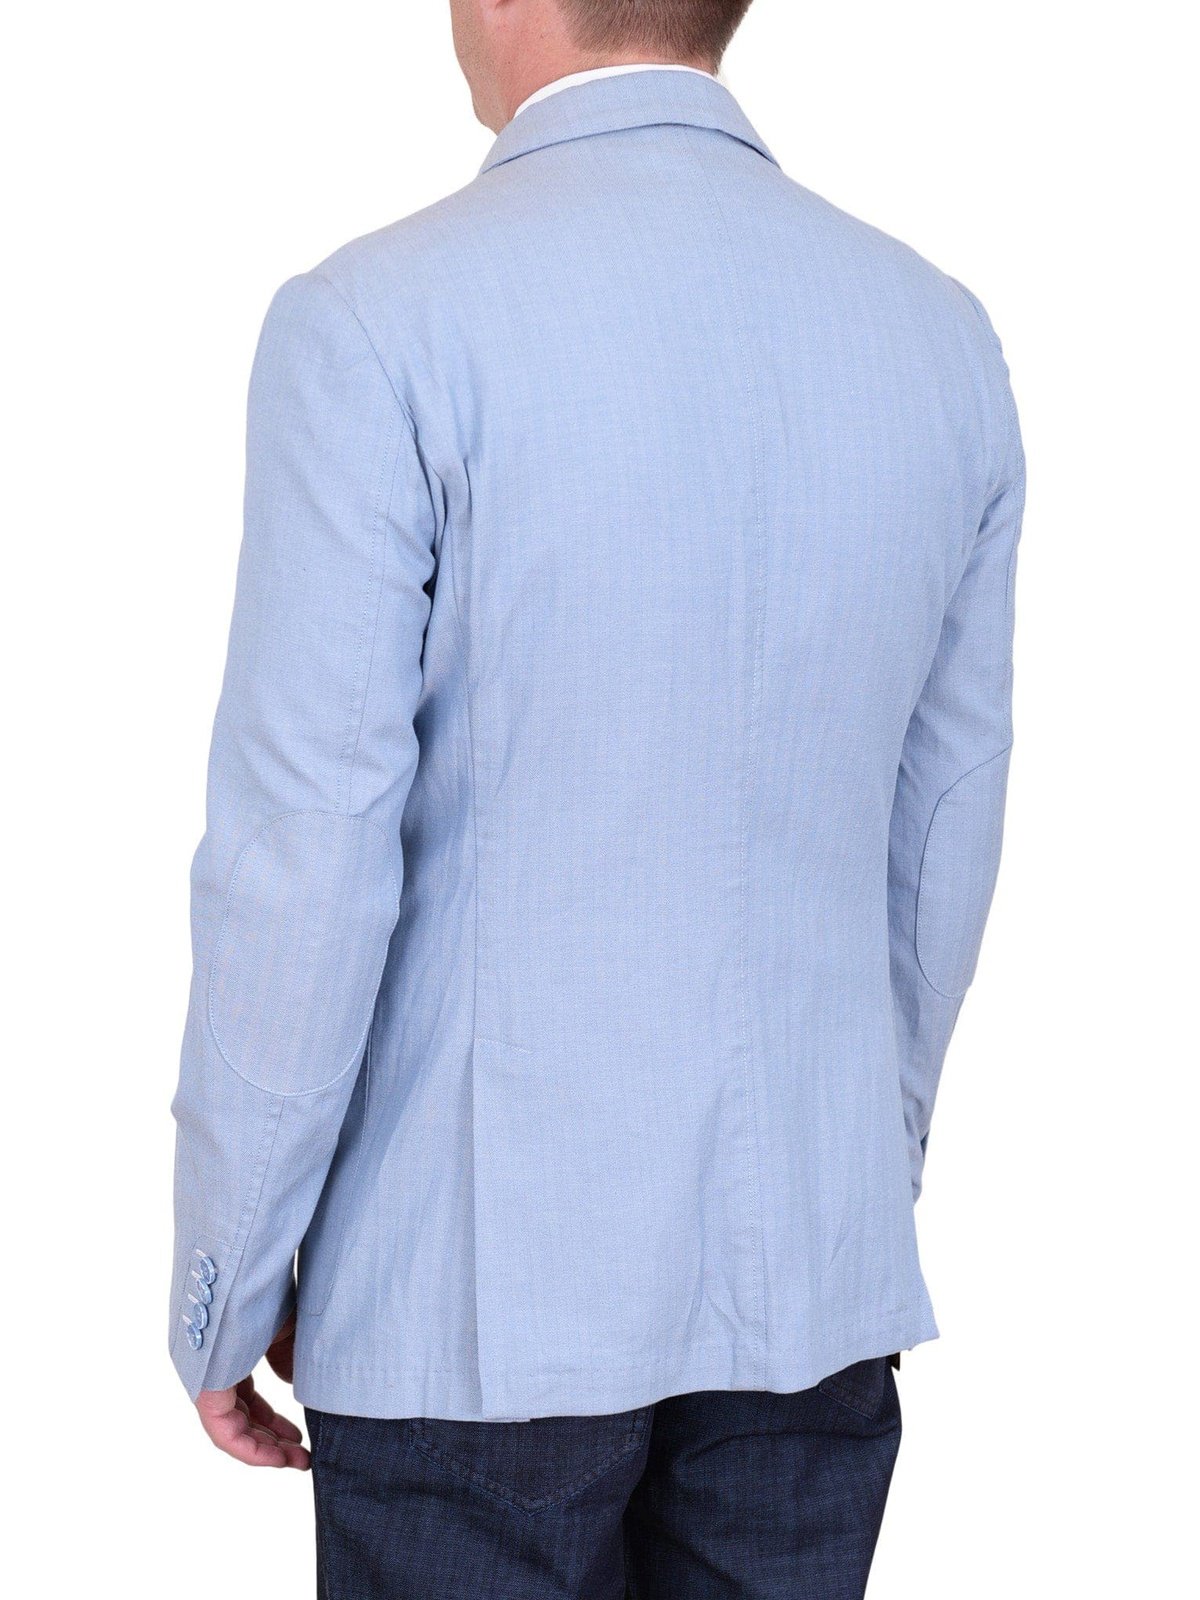 Label E BLAZERS Mens Modern Fit Sky Blue Herringbone Unstructured Cotton Field Jacket Sportcoat